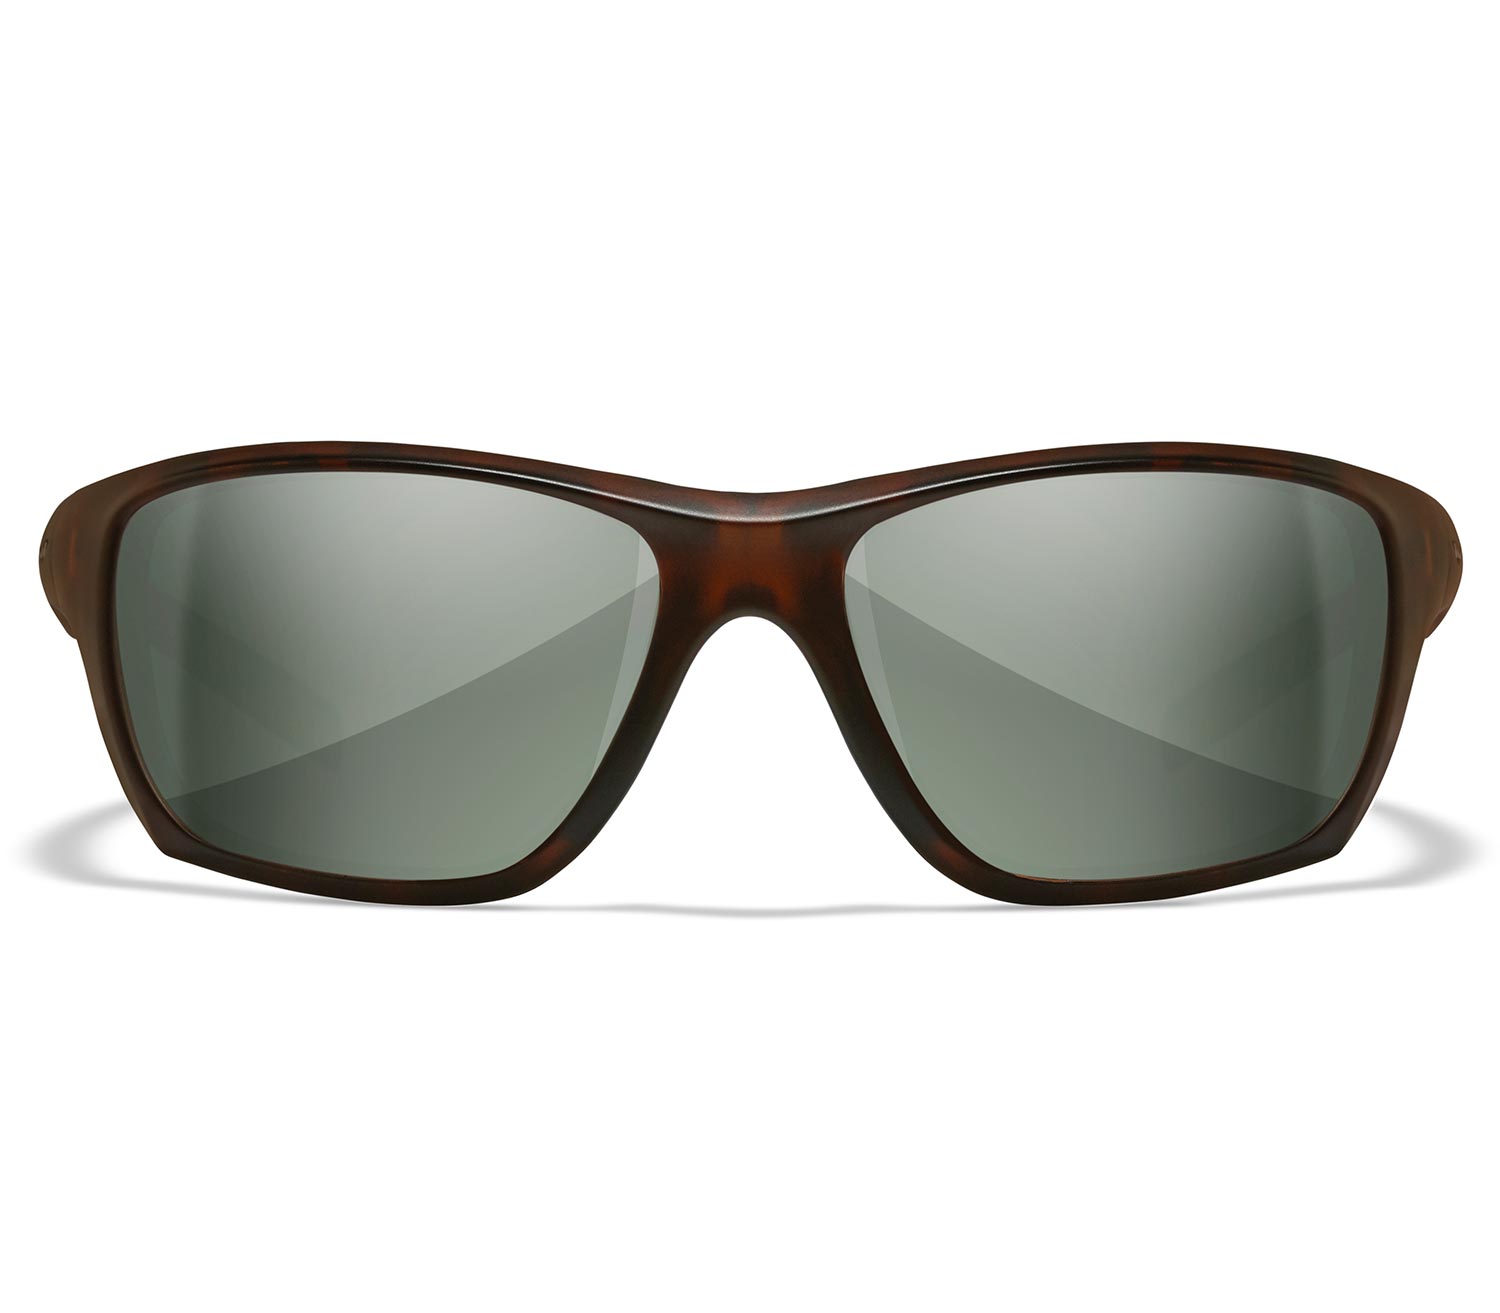 Gafas-Wiley-X-Aspect-Polarizadas-Green-frontal